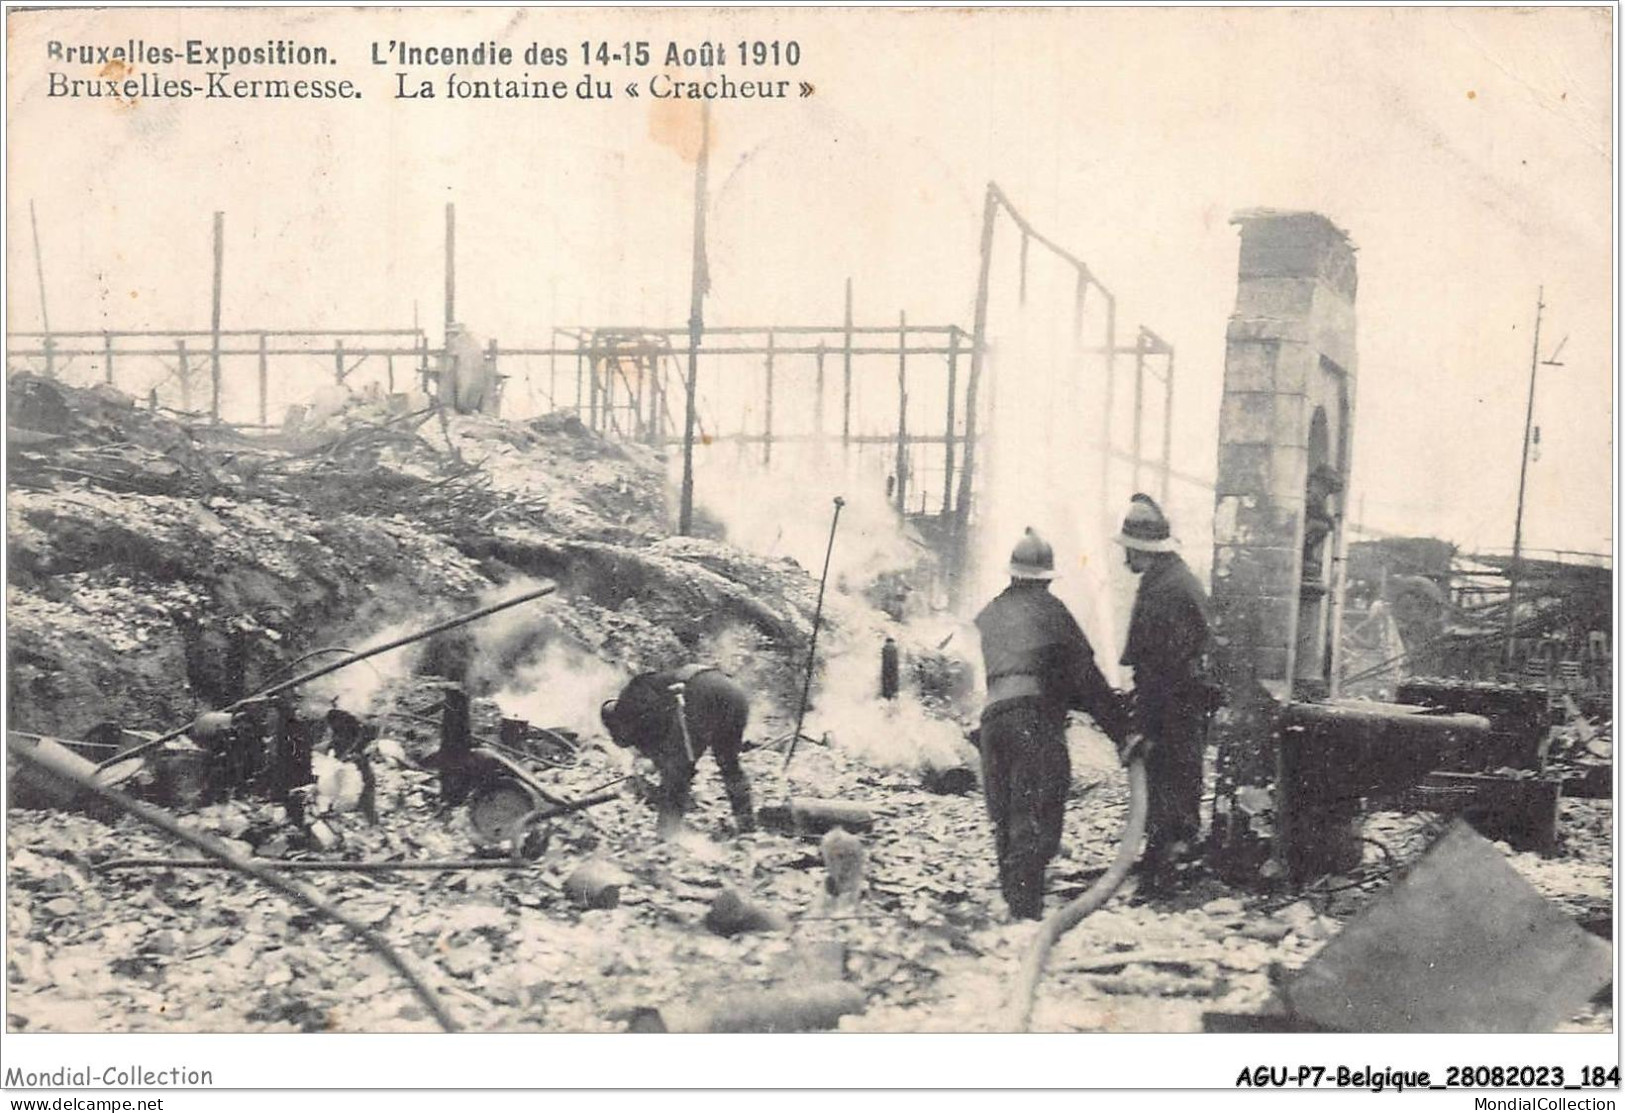 AGUP7-0621-BELGIQUE - BRUXELLES-KERMESSE - L'incendie Des 14-15 Août 1910 - La Fontaine Du - Cracheur - Expositions Universelles